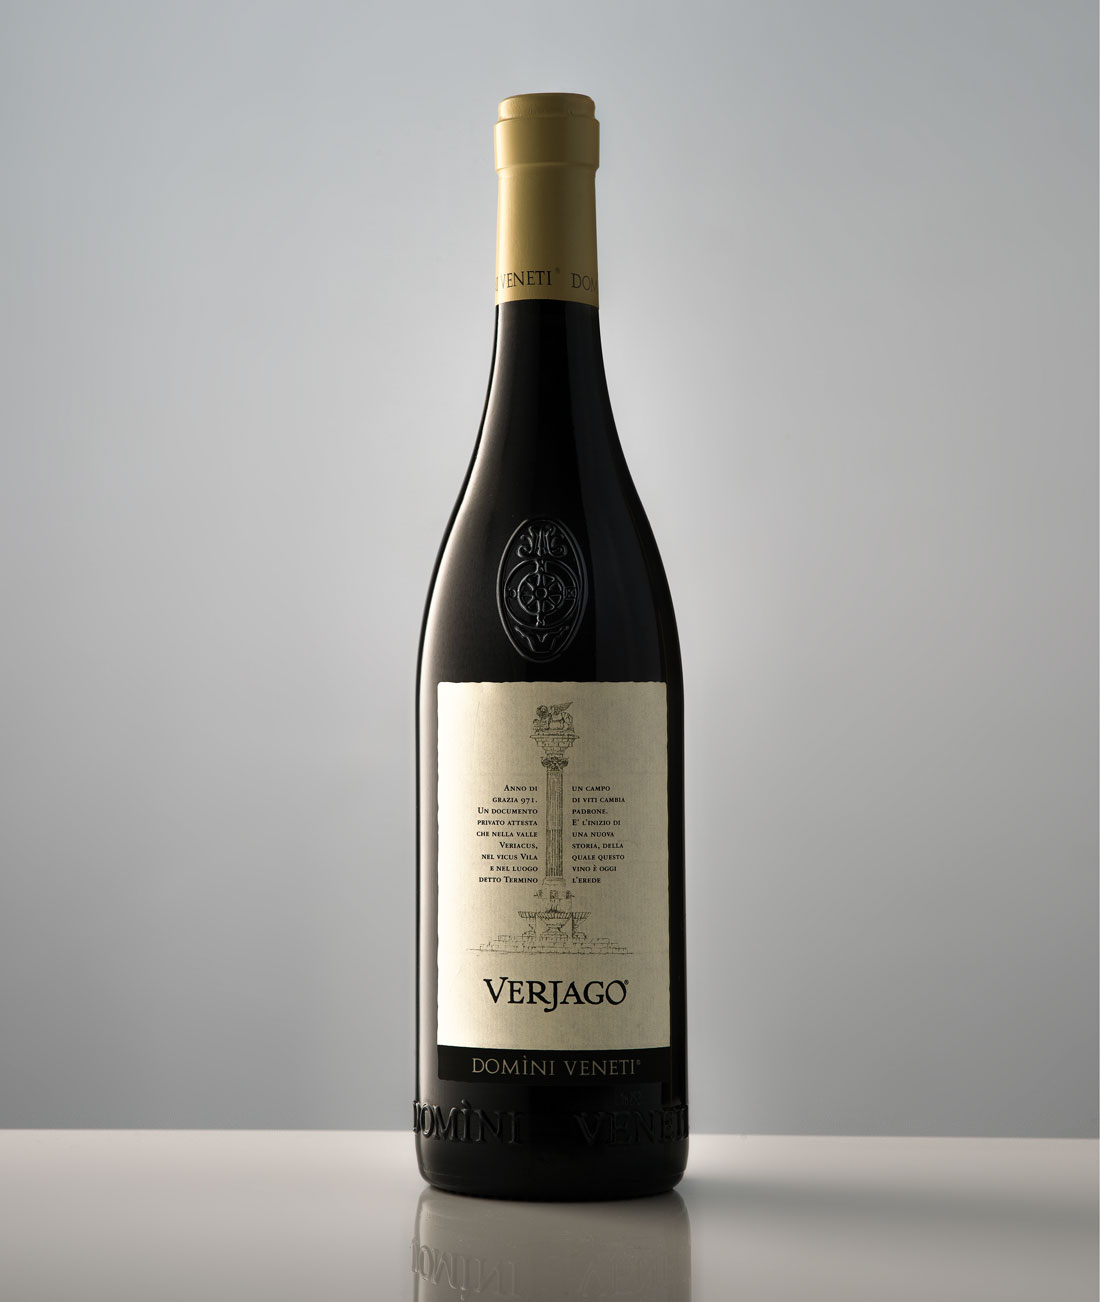 Concorsi enologici. Il miglior Ripasso al Gran Premio Internazionale del vino Mundus Vini è "La Casetta" Domìni Veneti - 15